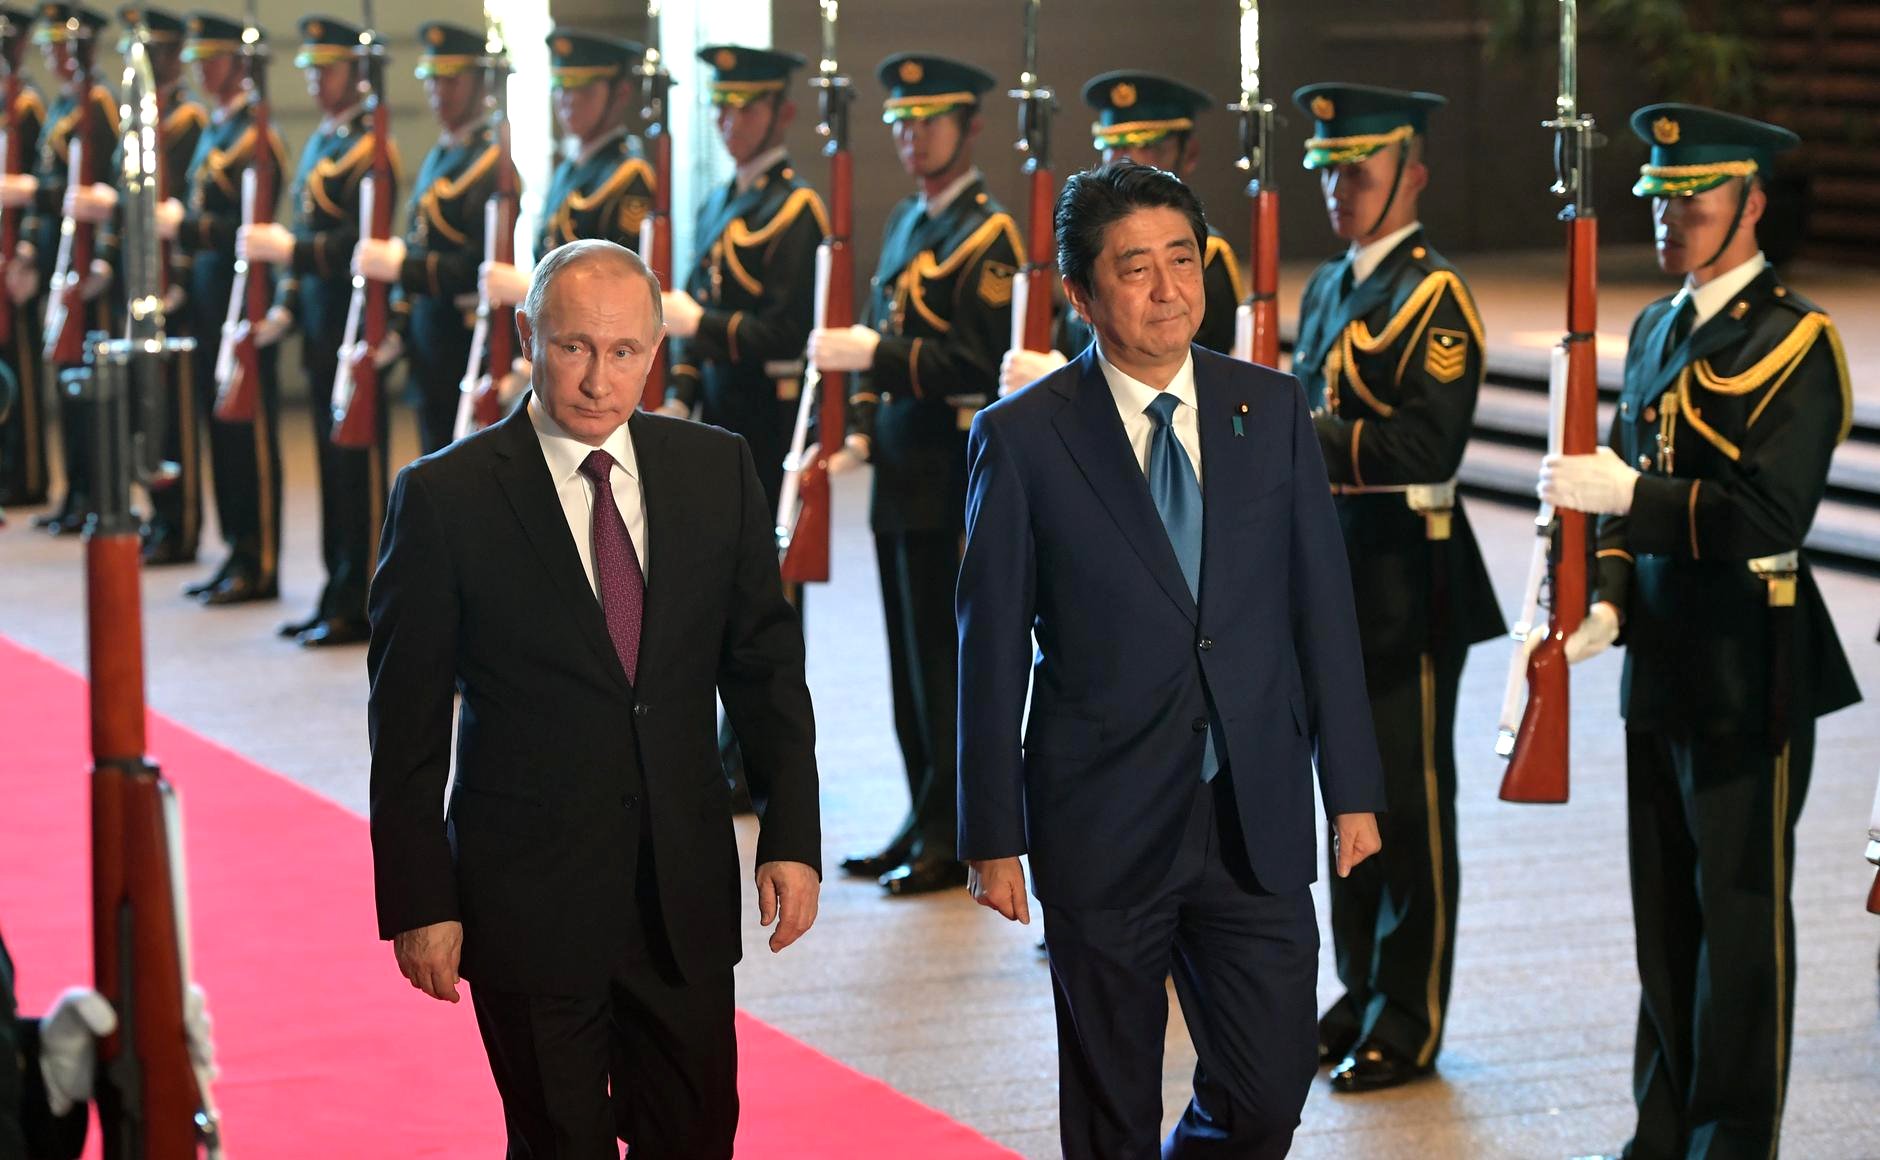 Японія не укладатиме мирний договір з РФ, поки сторони не вирішать питання про Курильські острови